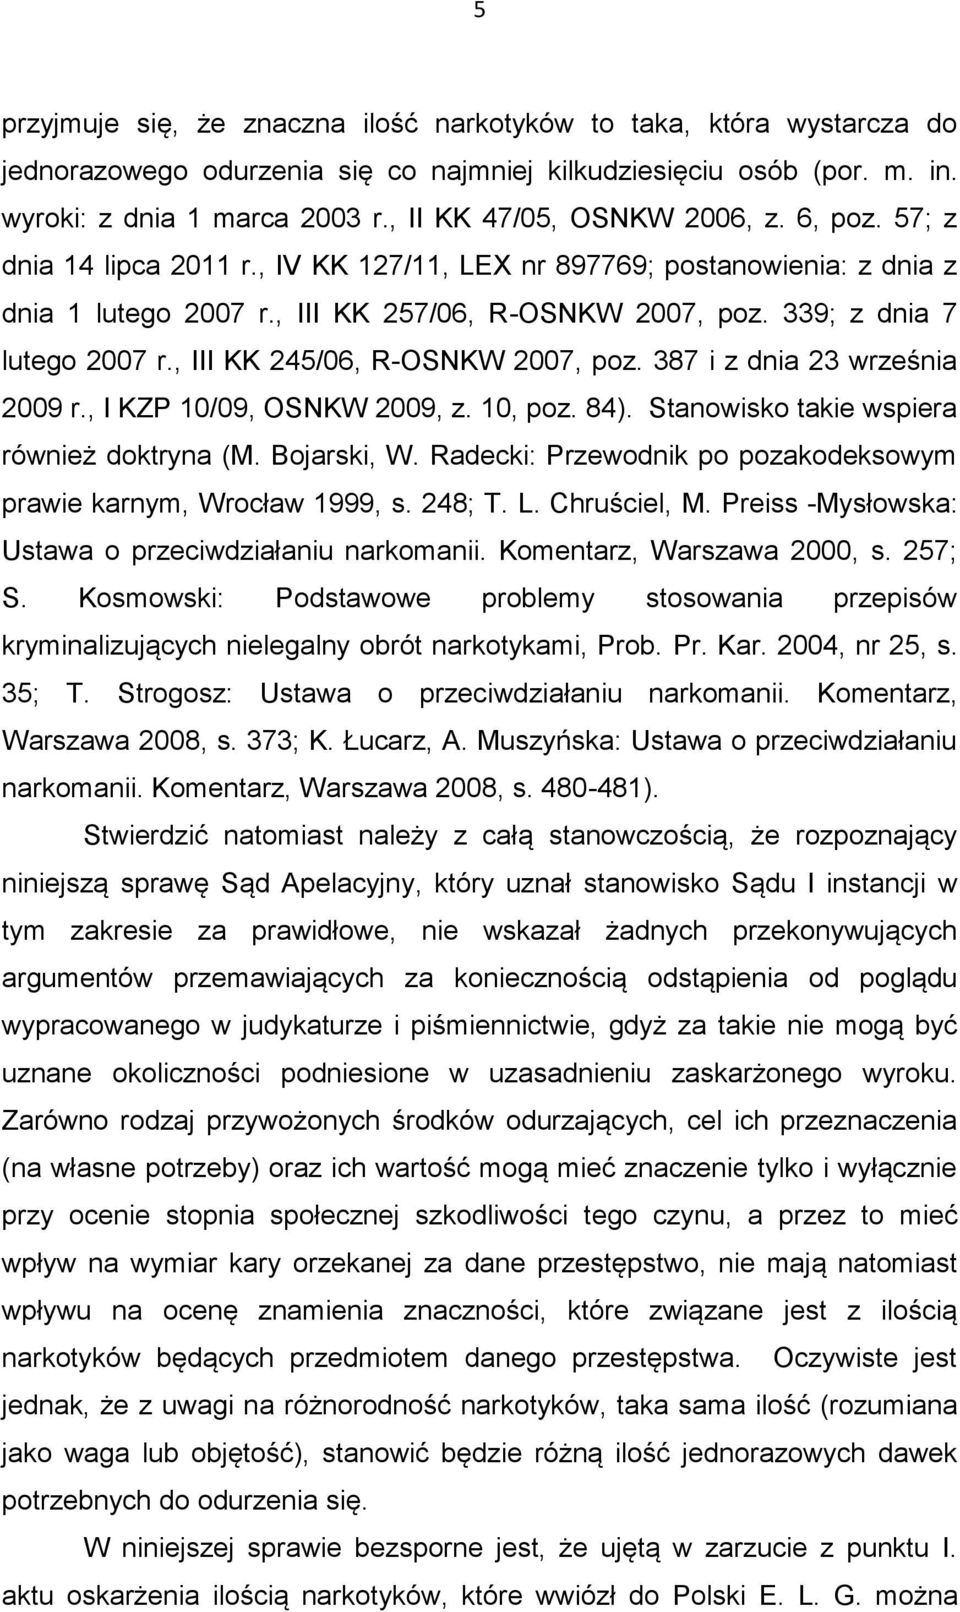 339; z dnia 7 lutego 2007 r., III KK 245/06, R-OSNKW 2007, poz. 387 i z dnia 23 września 2009 r., I KZP 10/09, OSNKW 2009, z. 10, poz. 84). Stanowisko takie wspiera również doktryna (M. Bojarski, W.